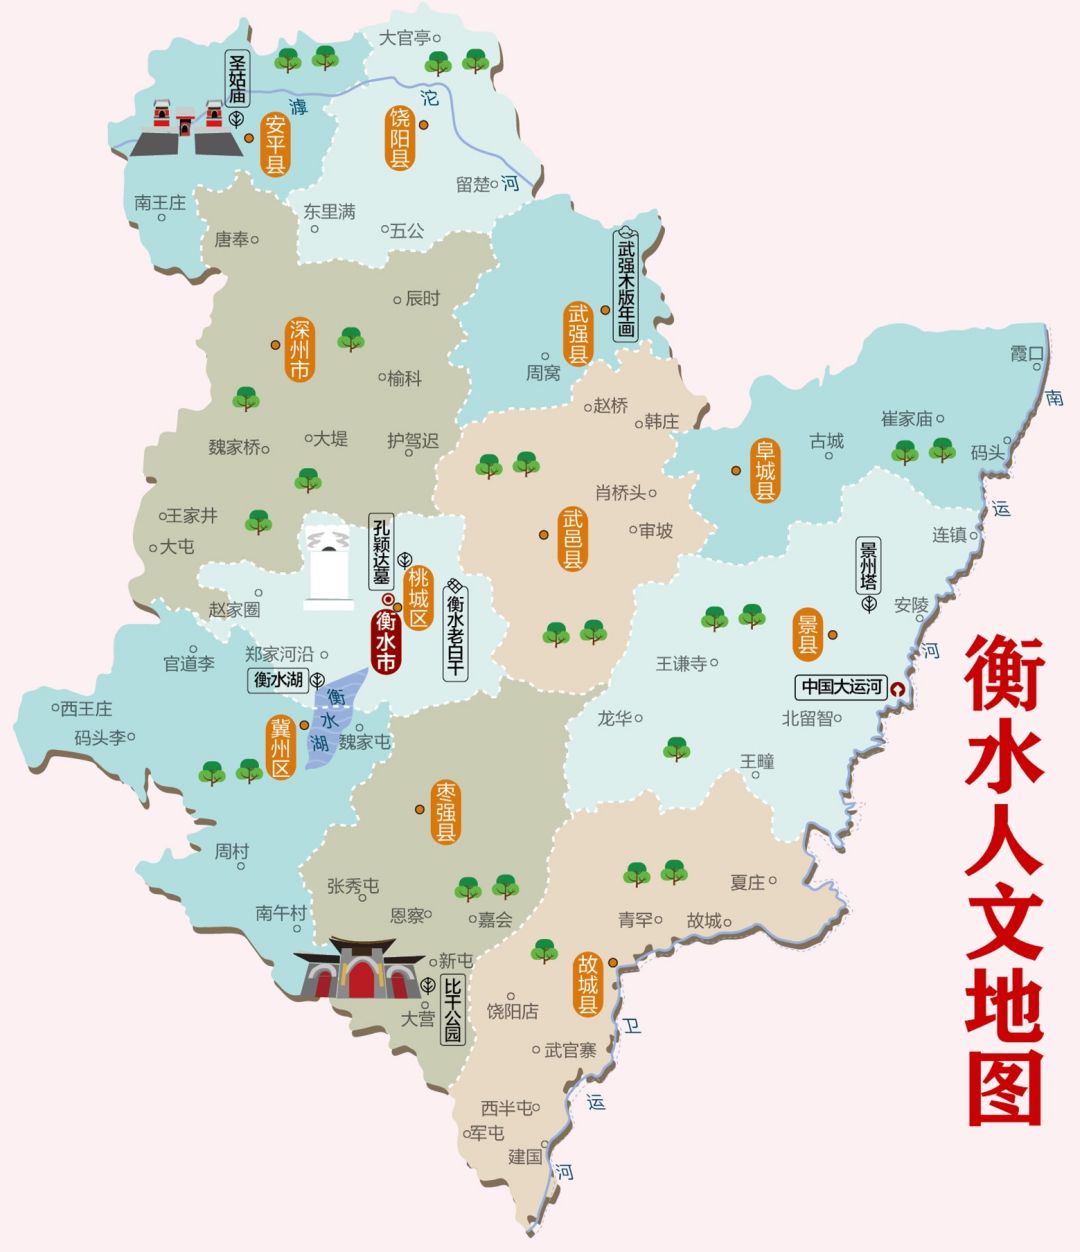 桃城地理位置图片